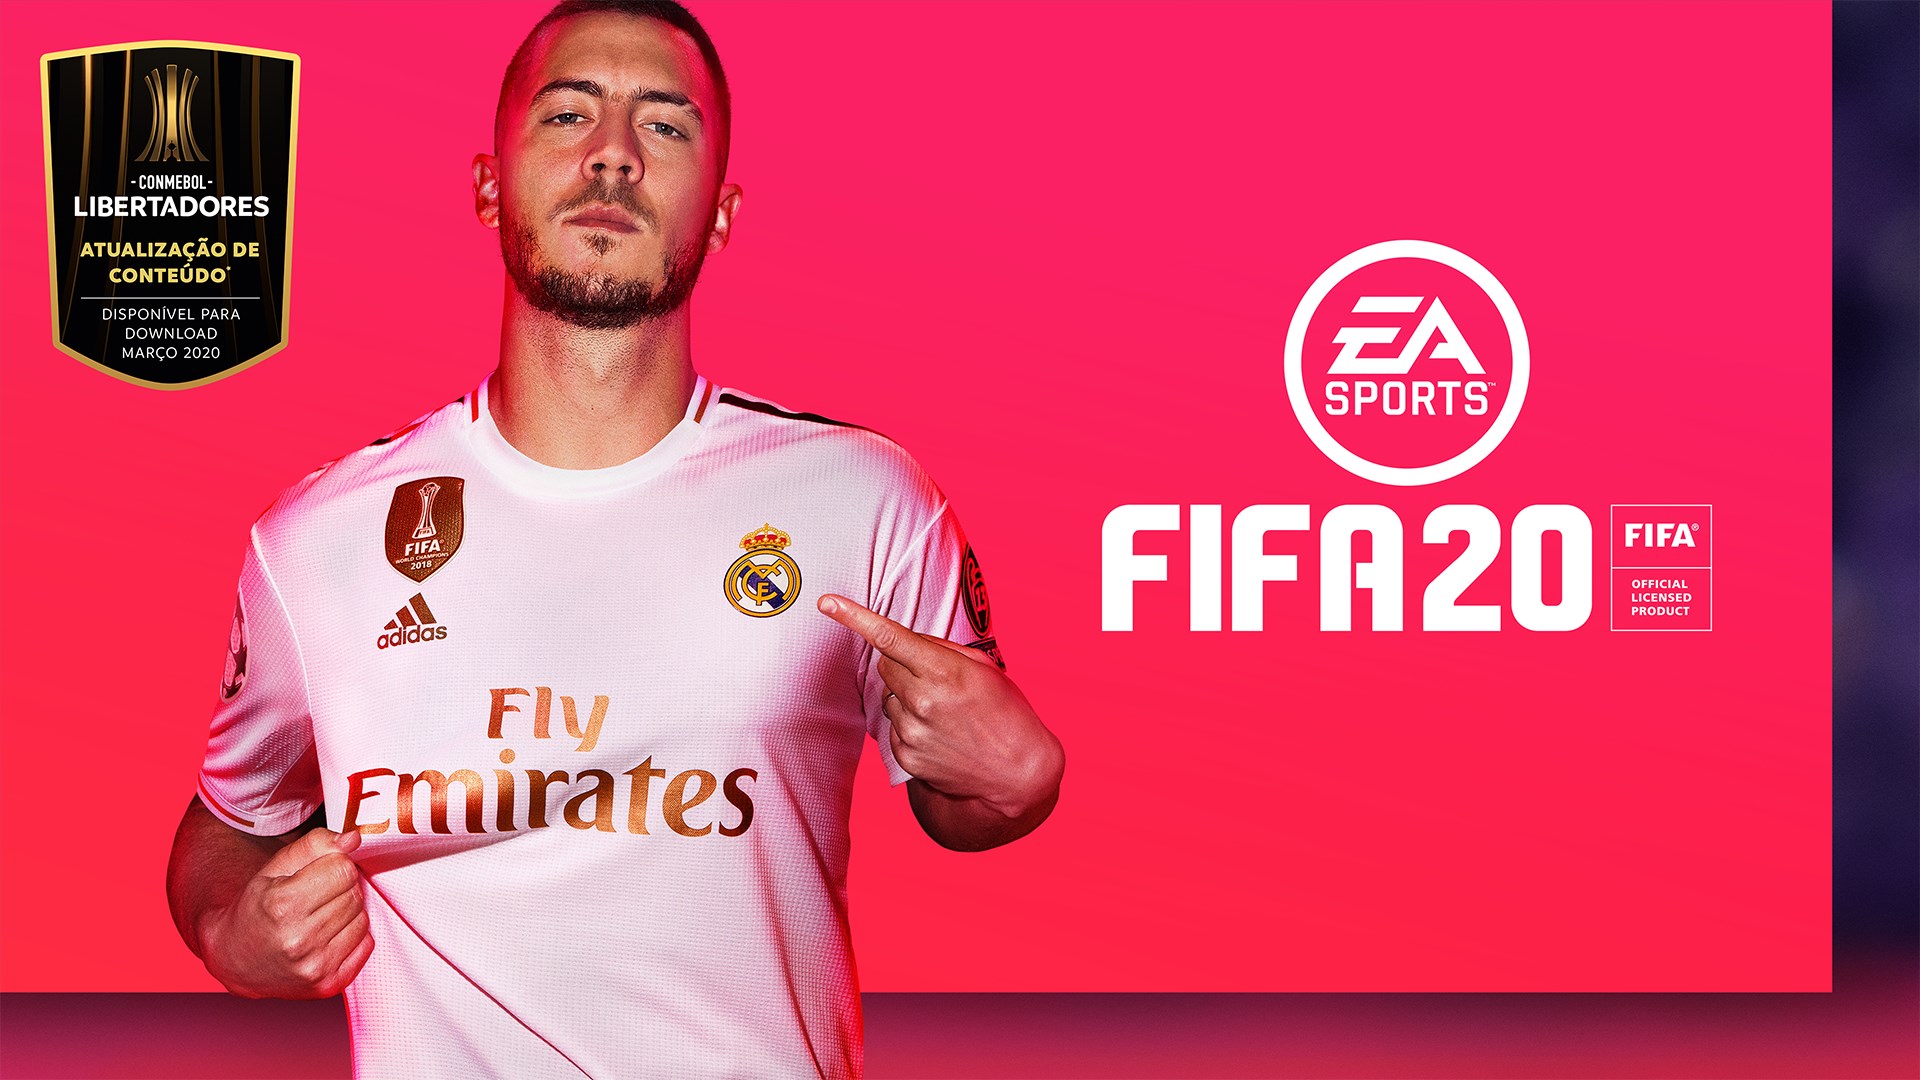 EA SPORTS FIFA 20